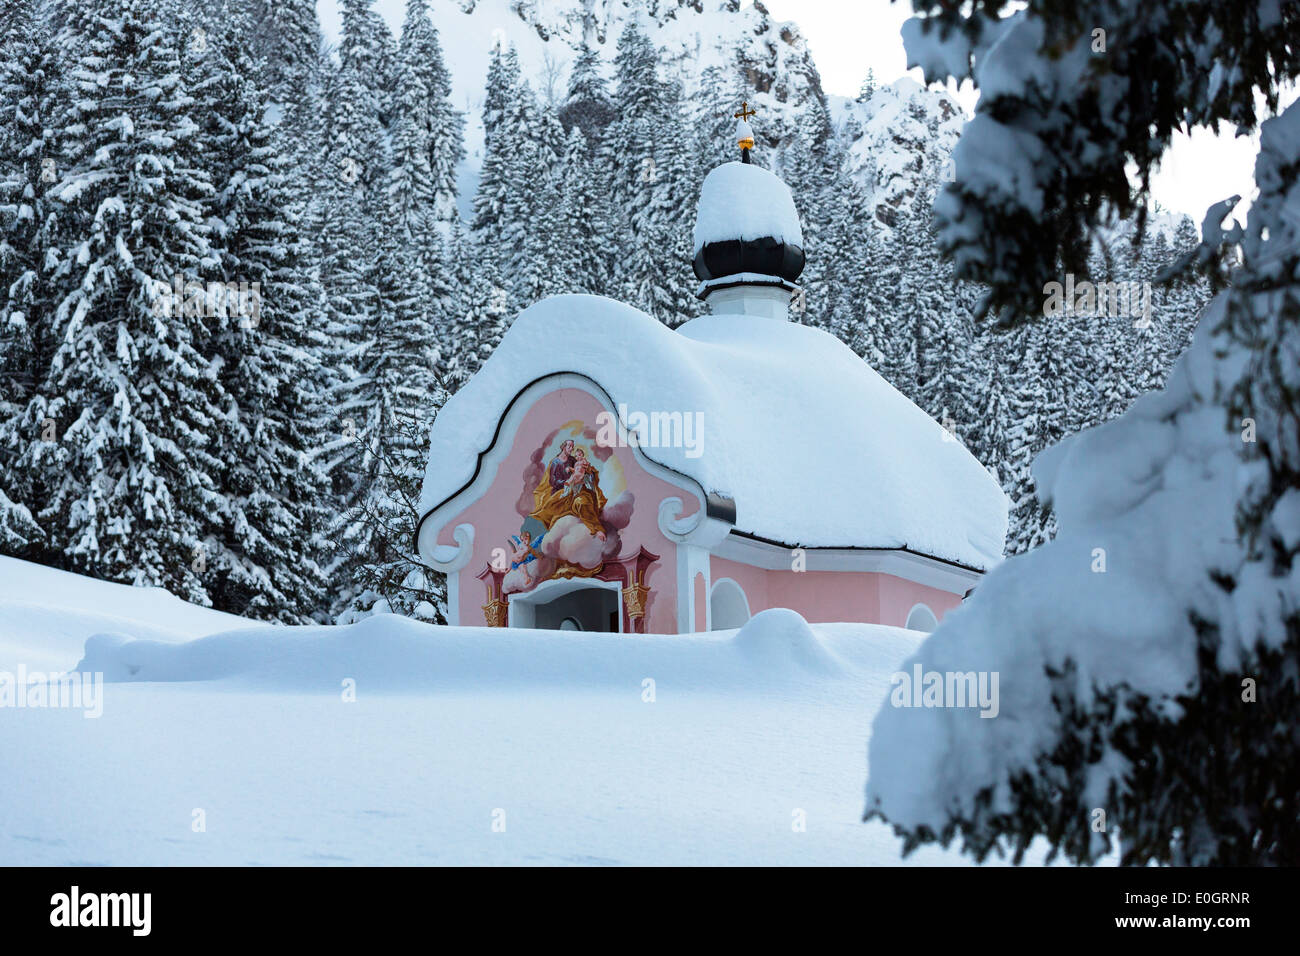 Chapelle Maria Koenigin au lac Lautersee en hiver après la chute de neige, Mittenwald, Werdenfelser Land, Upper Bavaria, Bavaria, Germany Banque D'Images